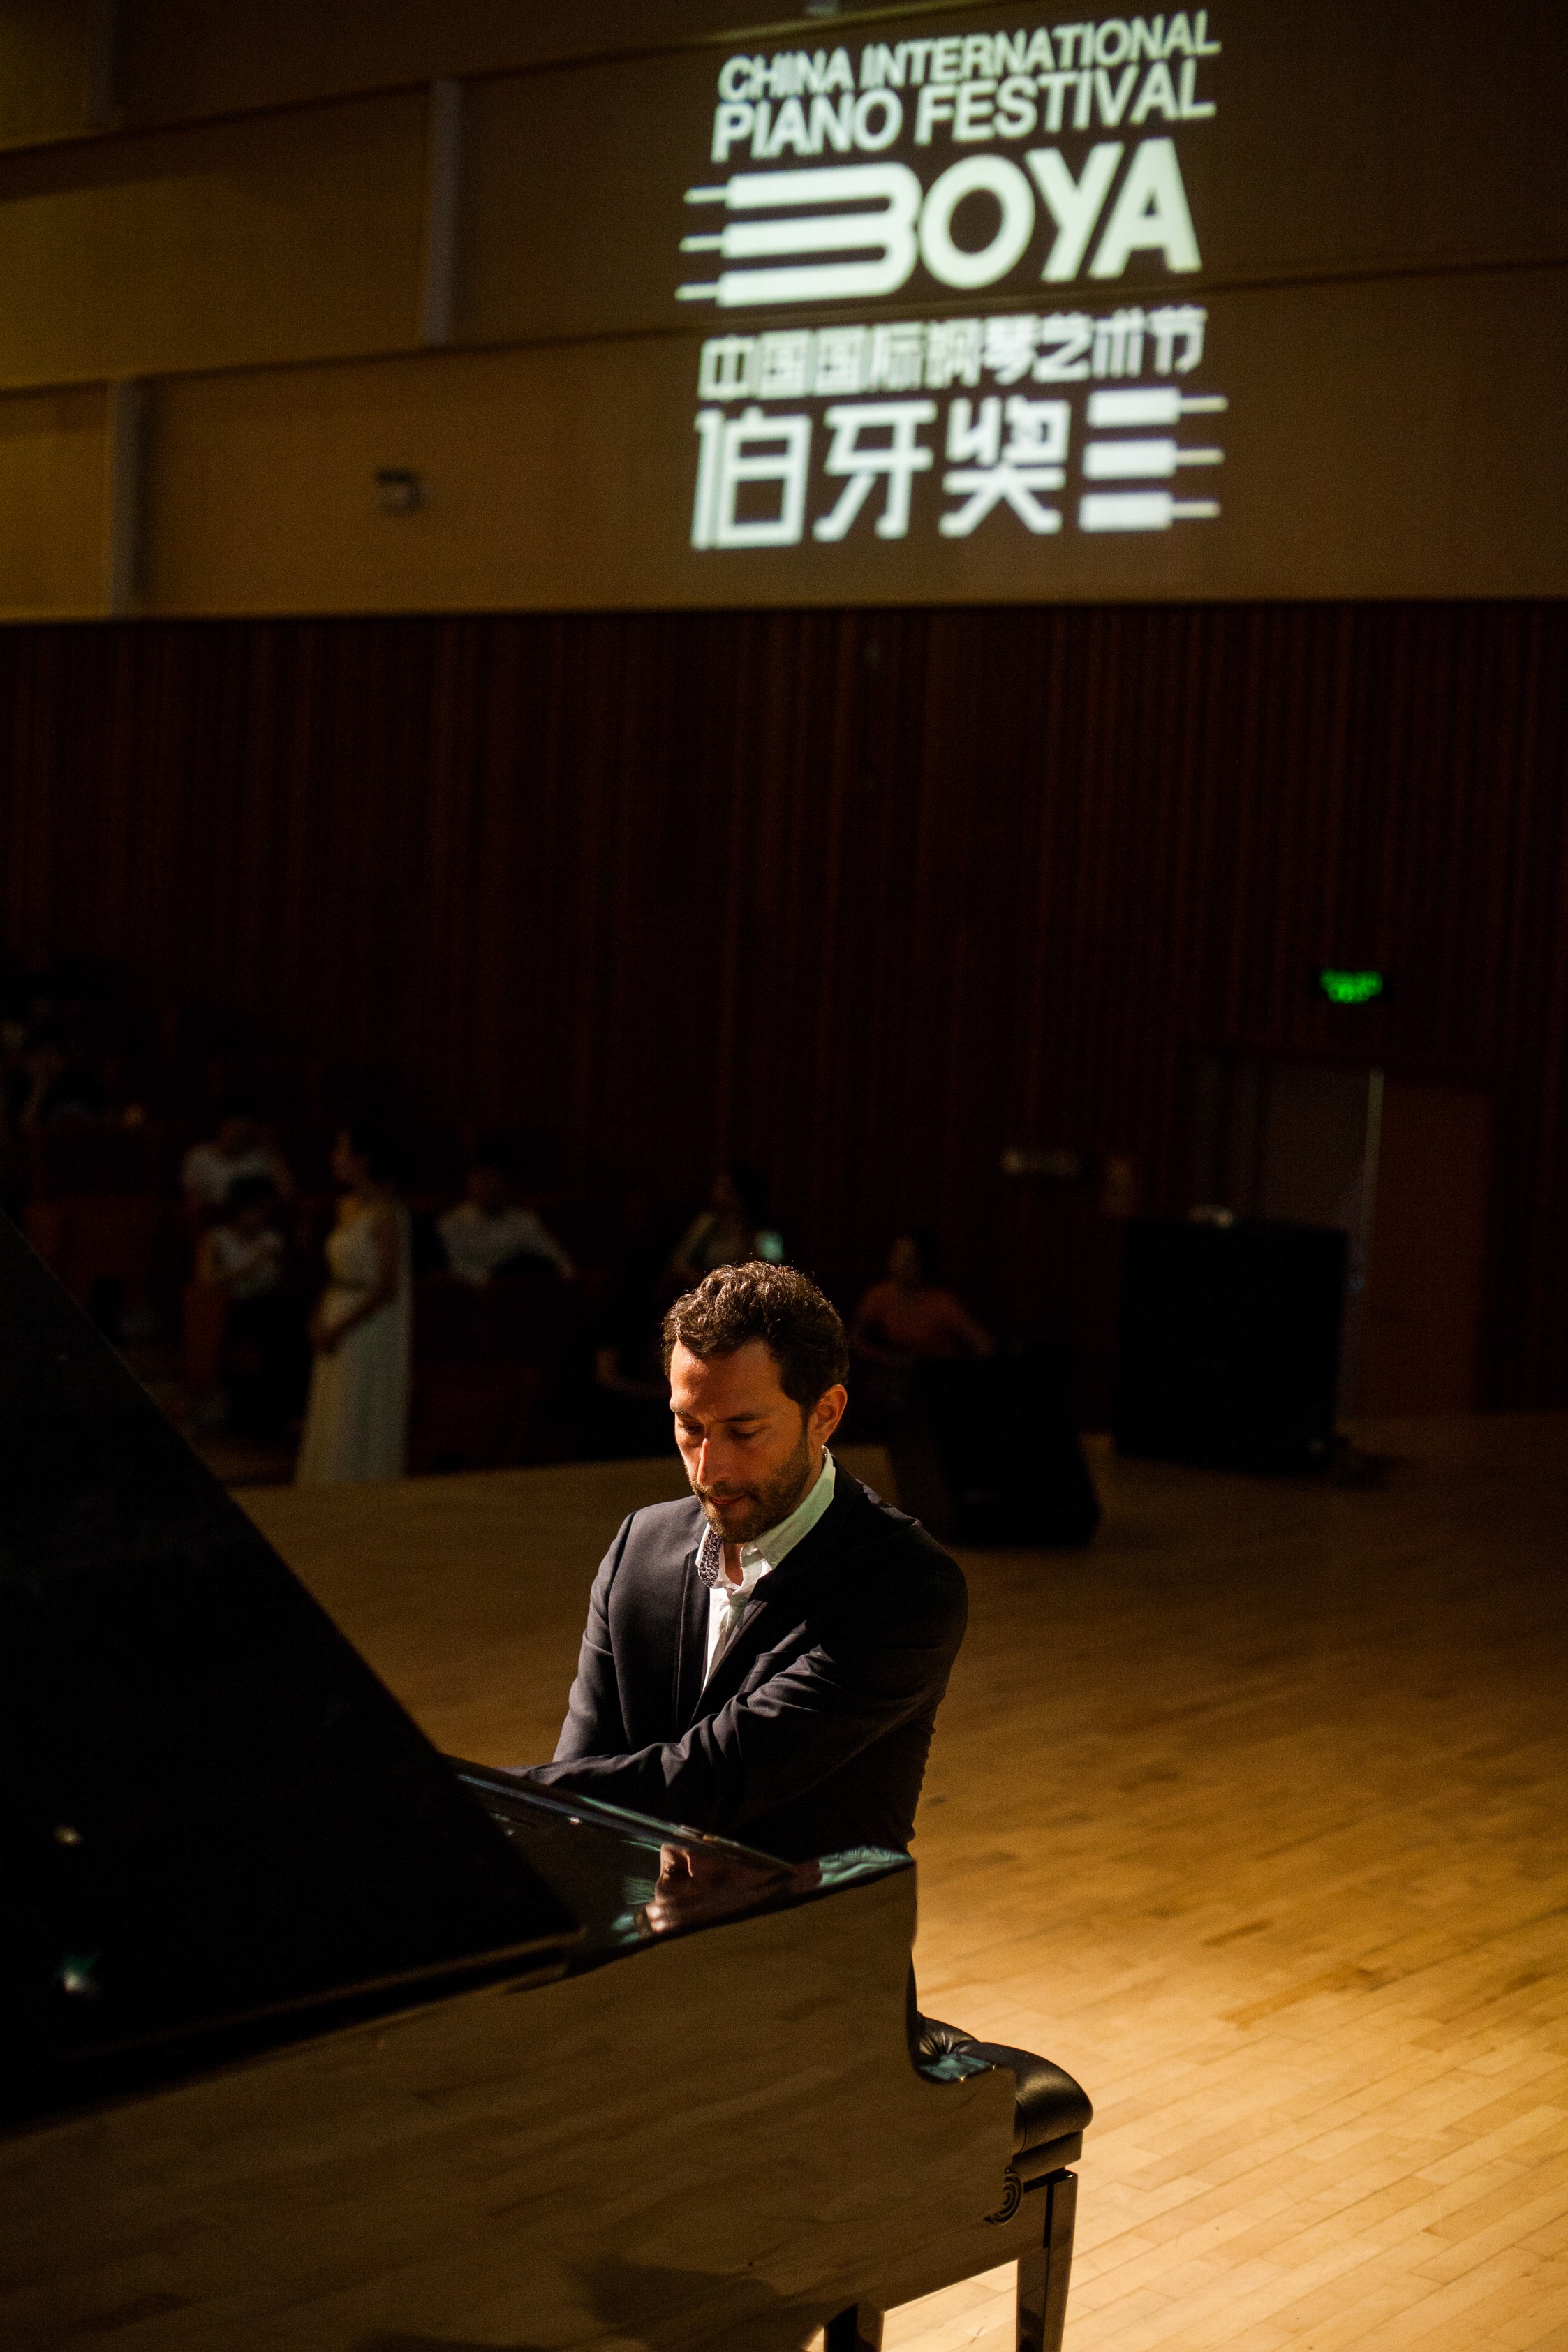 中國國際鋼琴藝術節伯牙獎